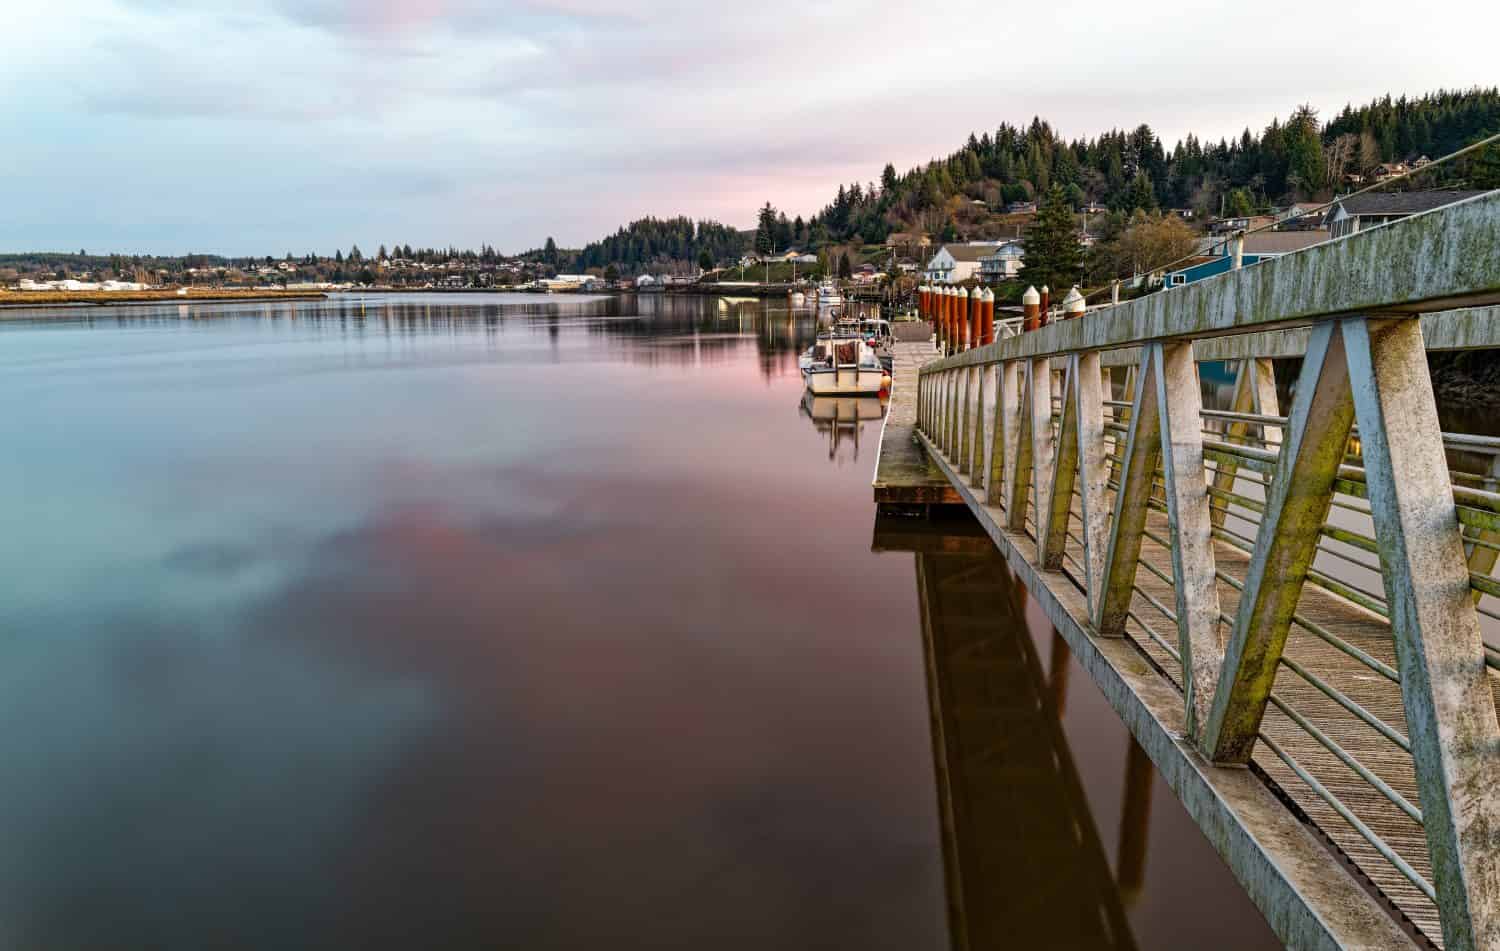 Boat dock at sundown on the Willapa River at South Bend, Washington, USA